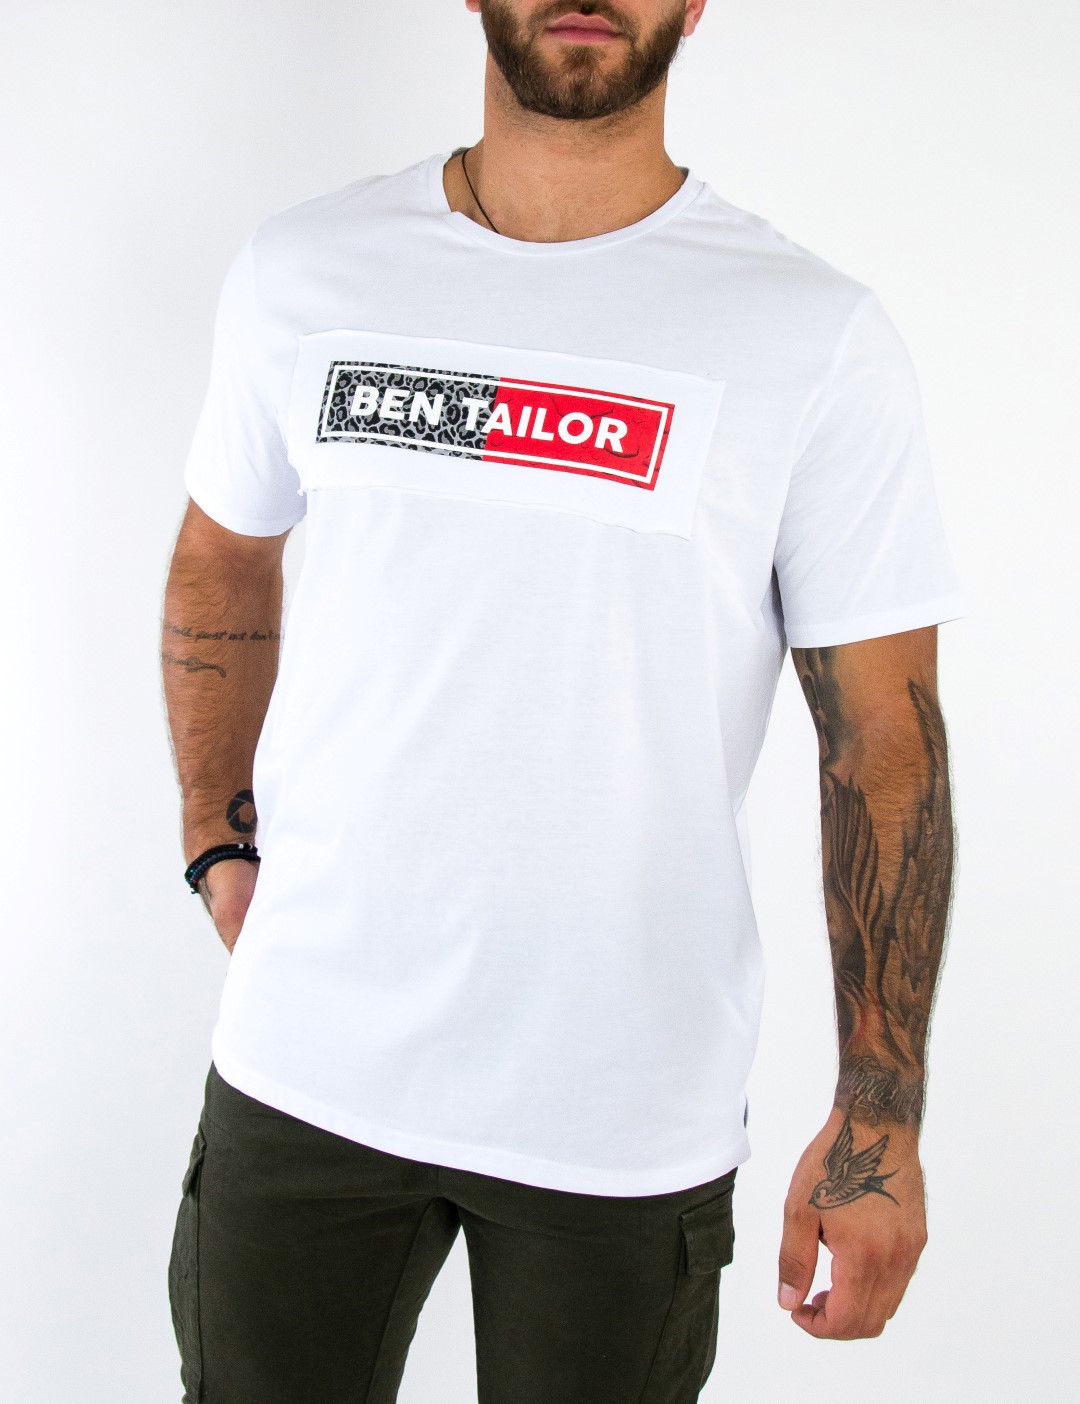 ΑΝΔΡΑΣ > ΑΝΔΡΙΚΑ ΡΟΥΧΑ > ΜΠΛΟΥΖΕΣ > T-Shirt Ανδρικό λευκό Hustler Tshirt τύπωμα Ben Tailor 5101